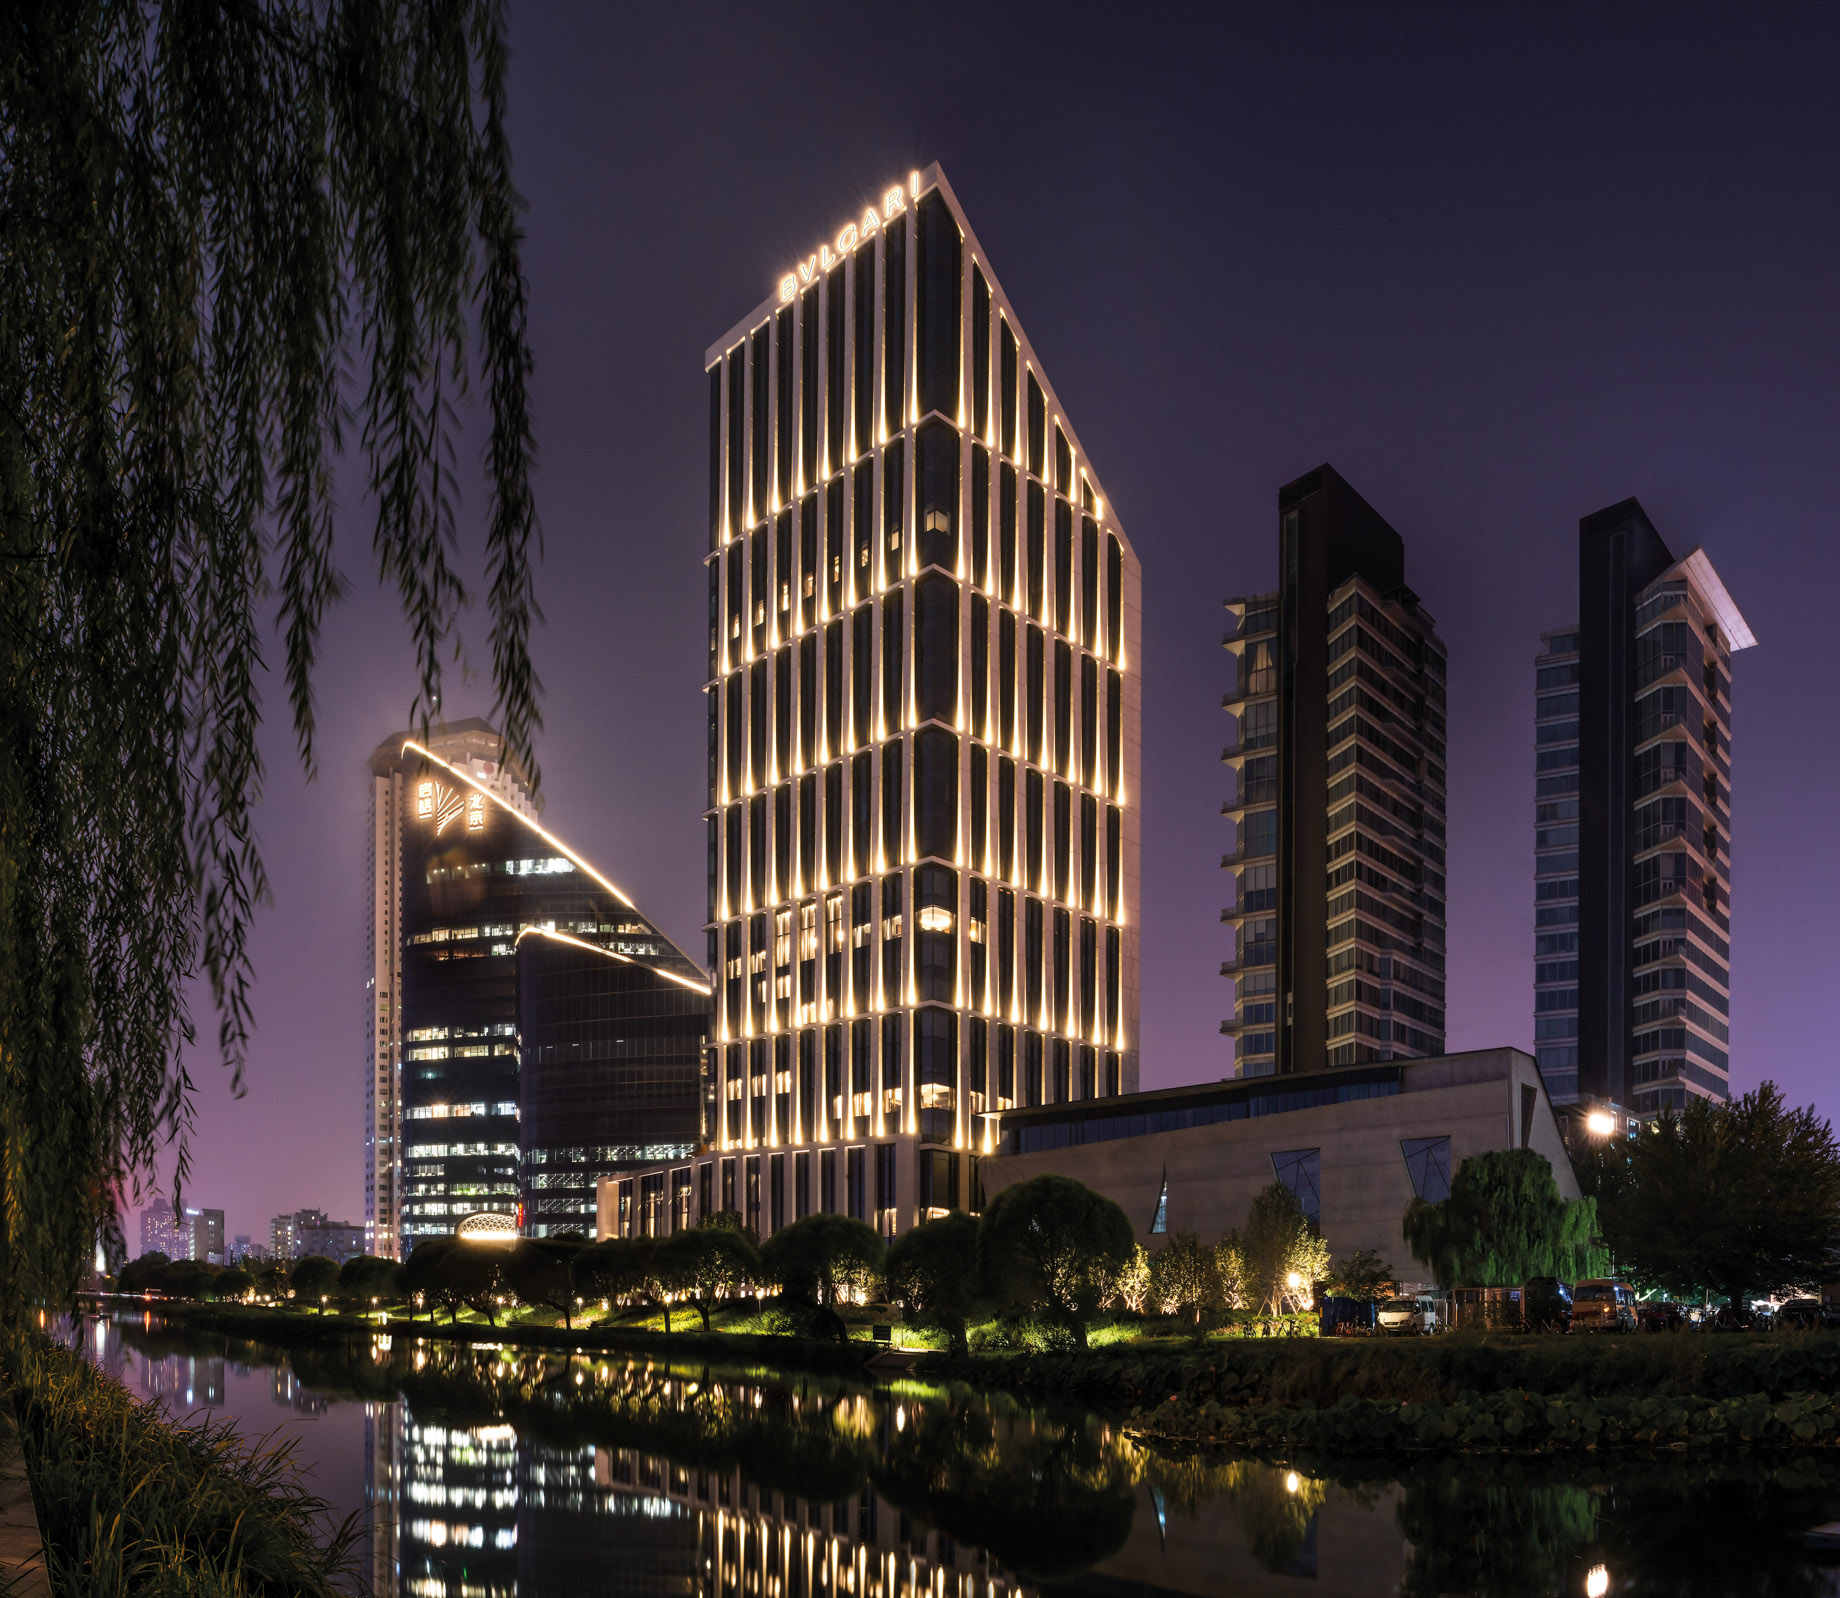 Bvlgari Hotel Beijing - Beijing, China - Hotel Night View